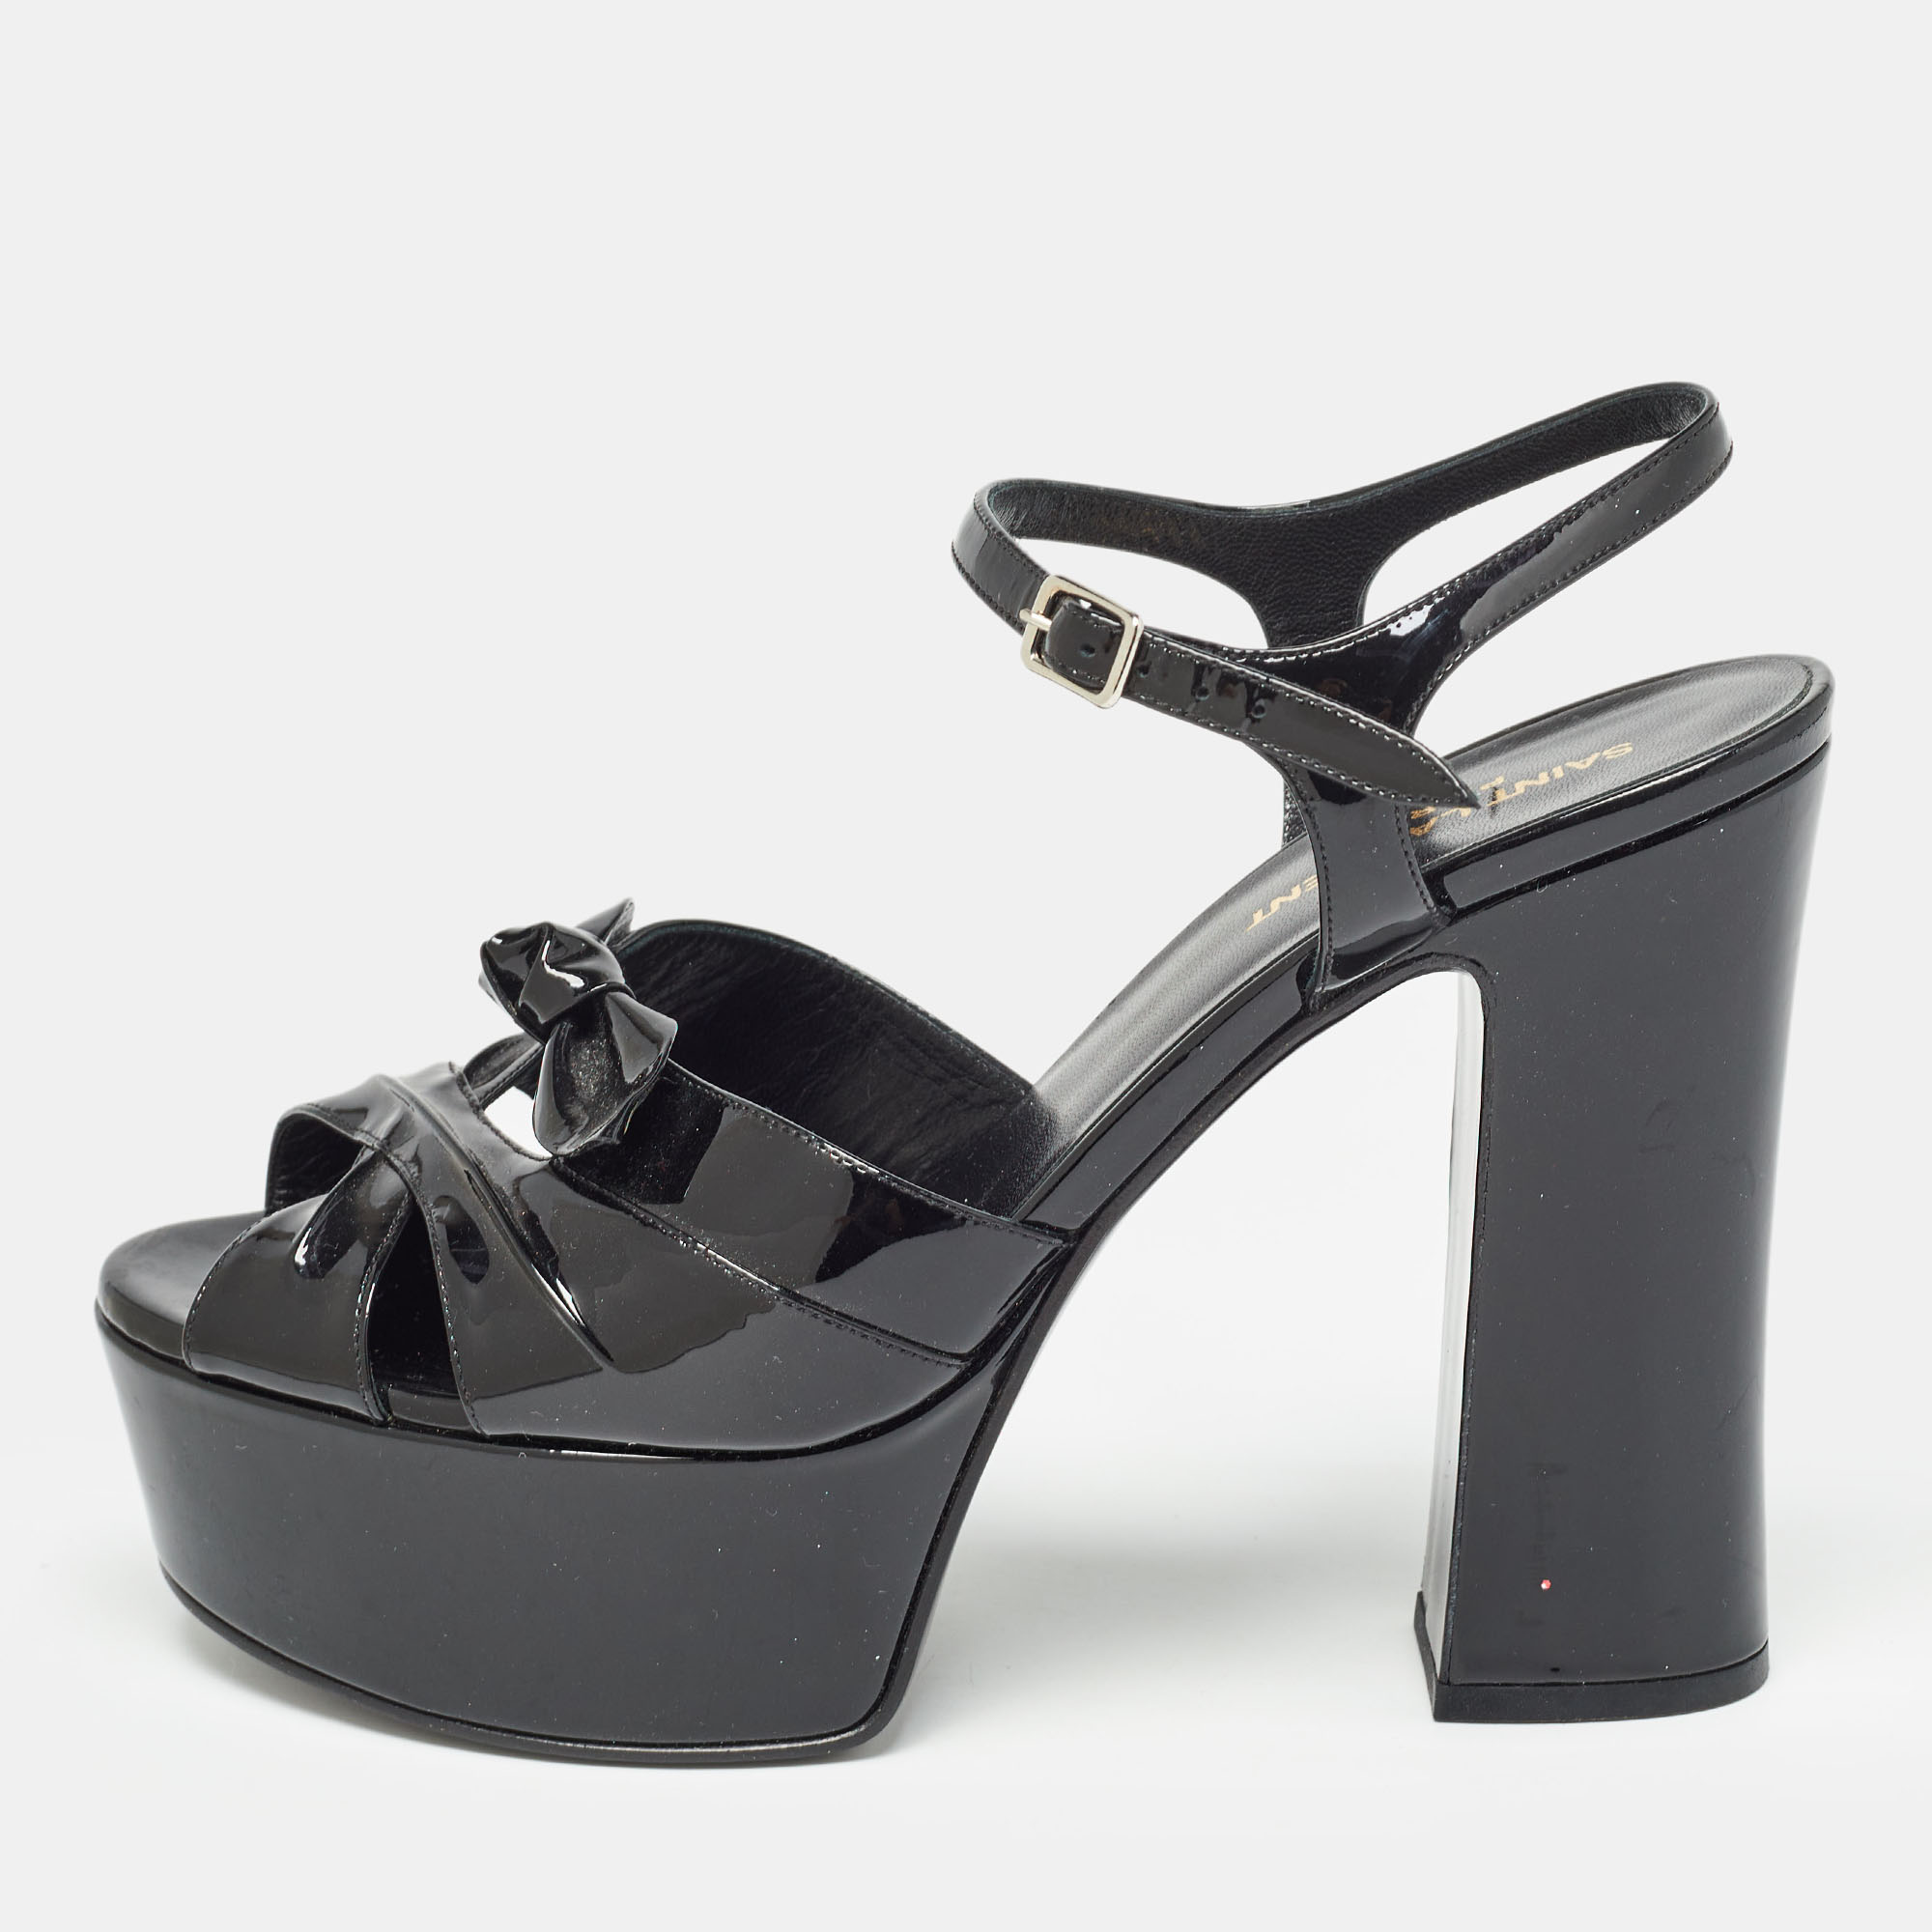 

Saint Laurent Paris Black Patent Leather Candy Platform Block Heel Ankle Strap Sandals Size